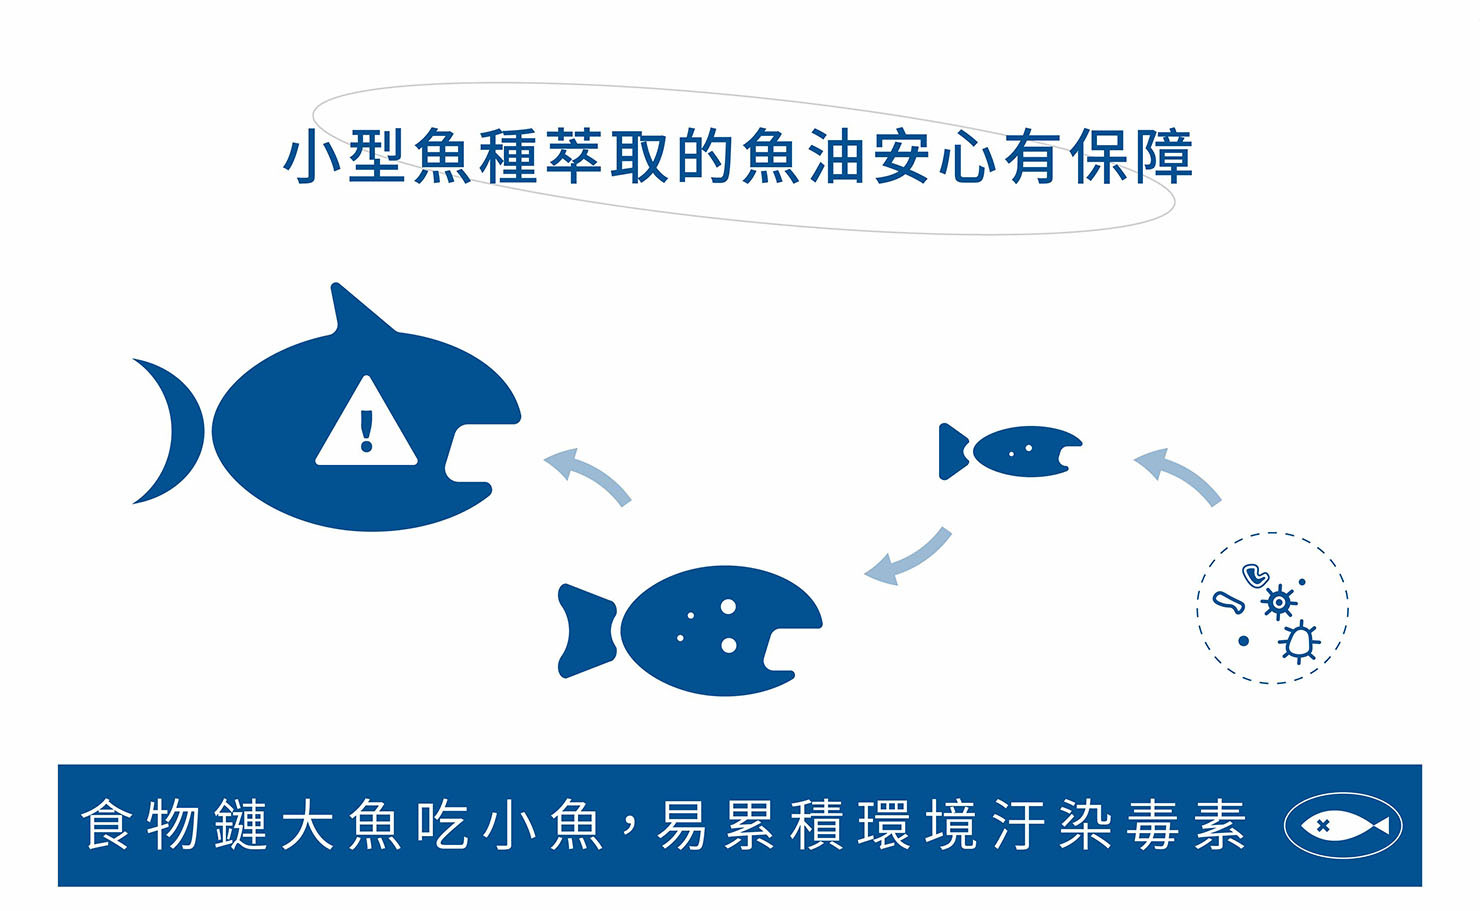 ”盡量挑選小型魚種萃取而來的魚油，例如：沙丁魚、鰹魚、鯖魚、鯷魚等小型魚種，可降低環境污染的毒素因子”/